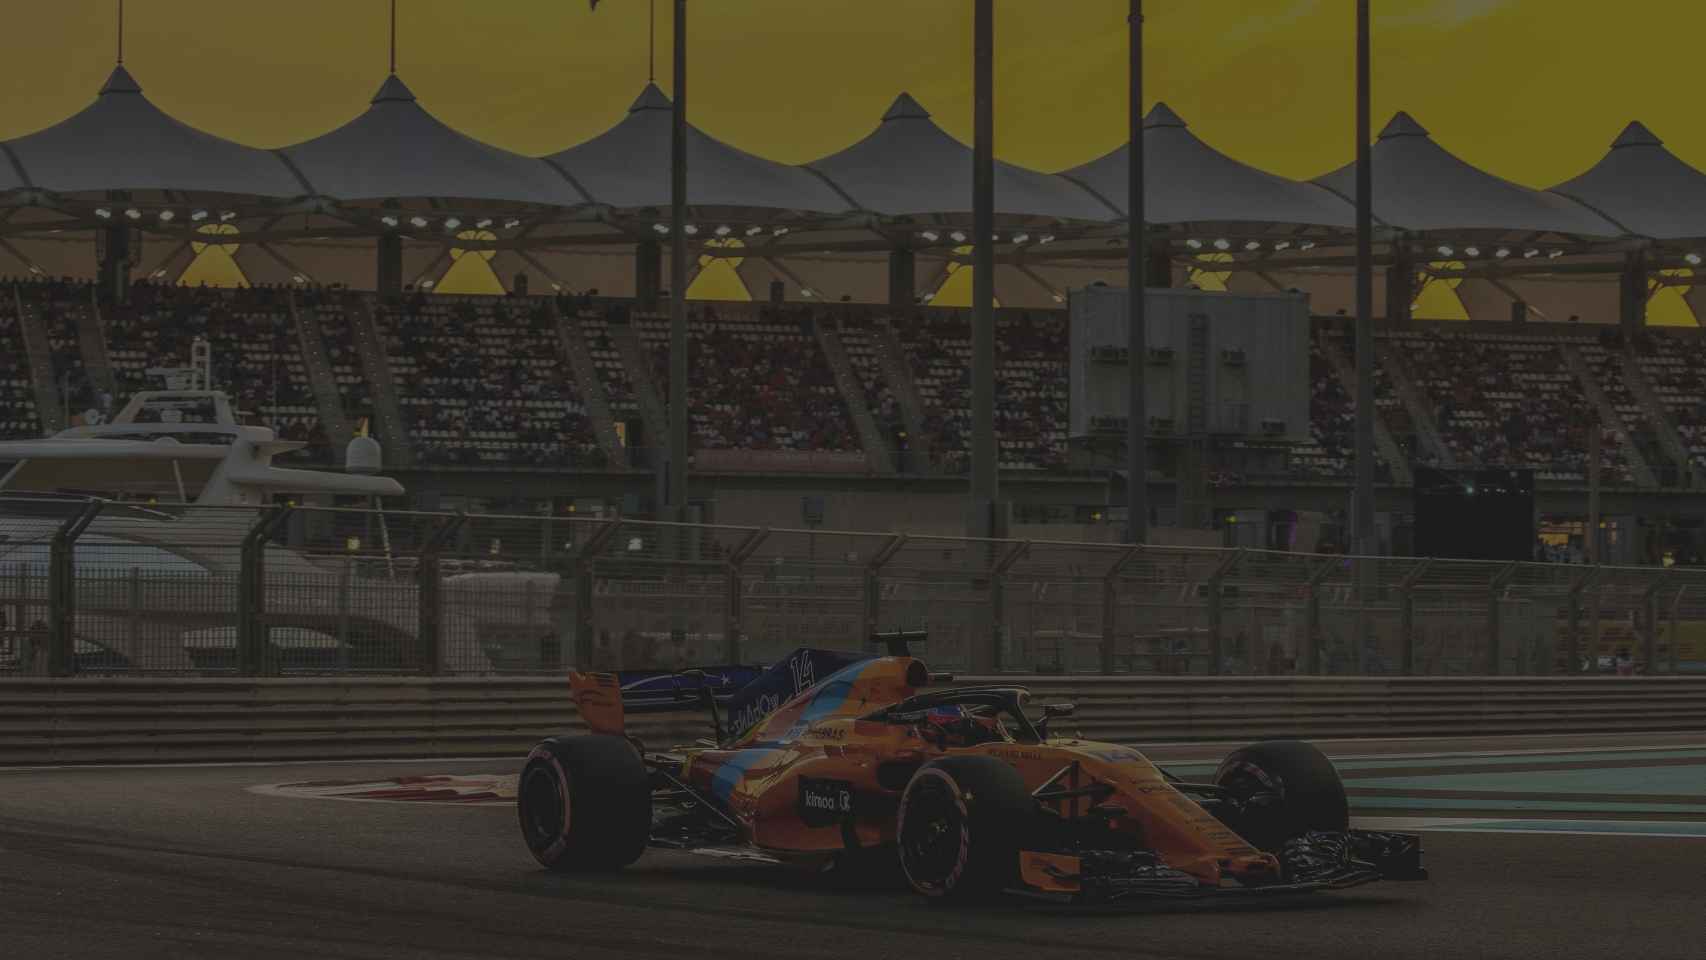 Fernando Alonso, durante el GP de Abu Dhabi